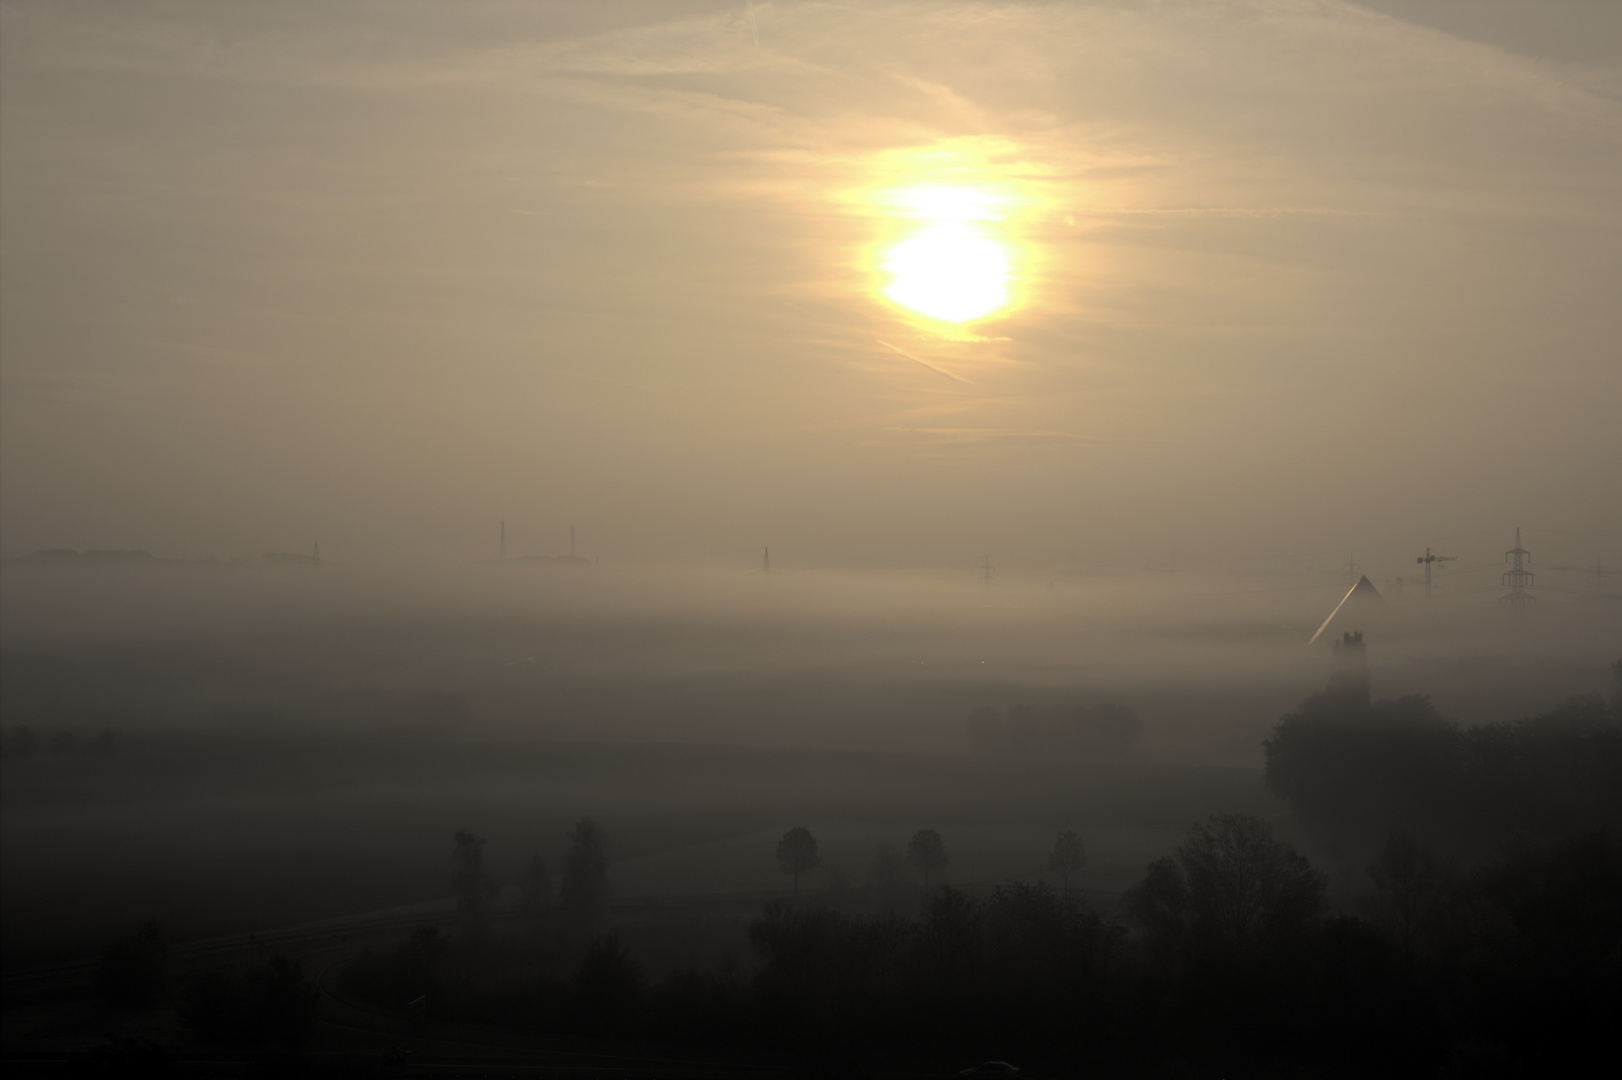 Mainz im Nebel